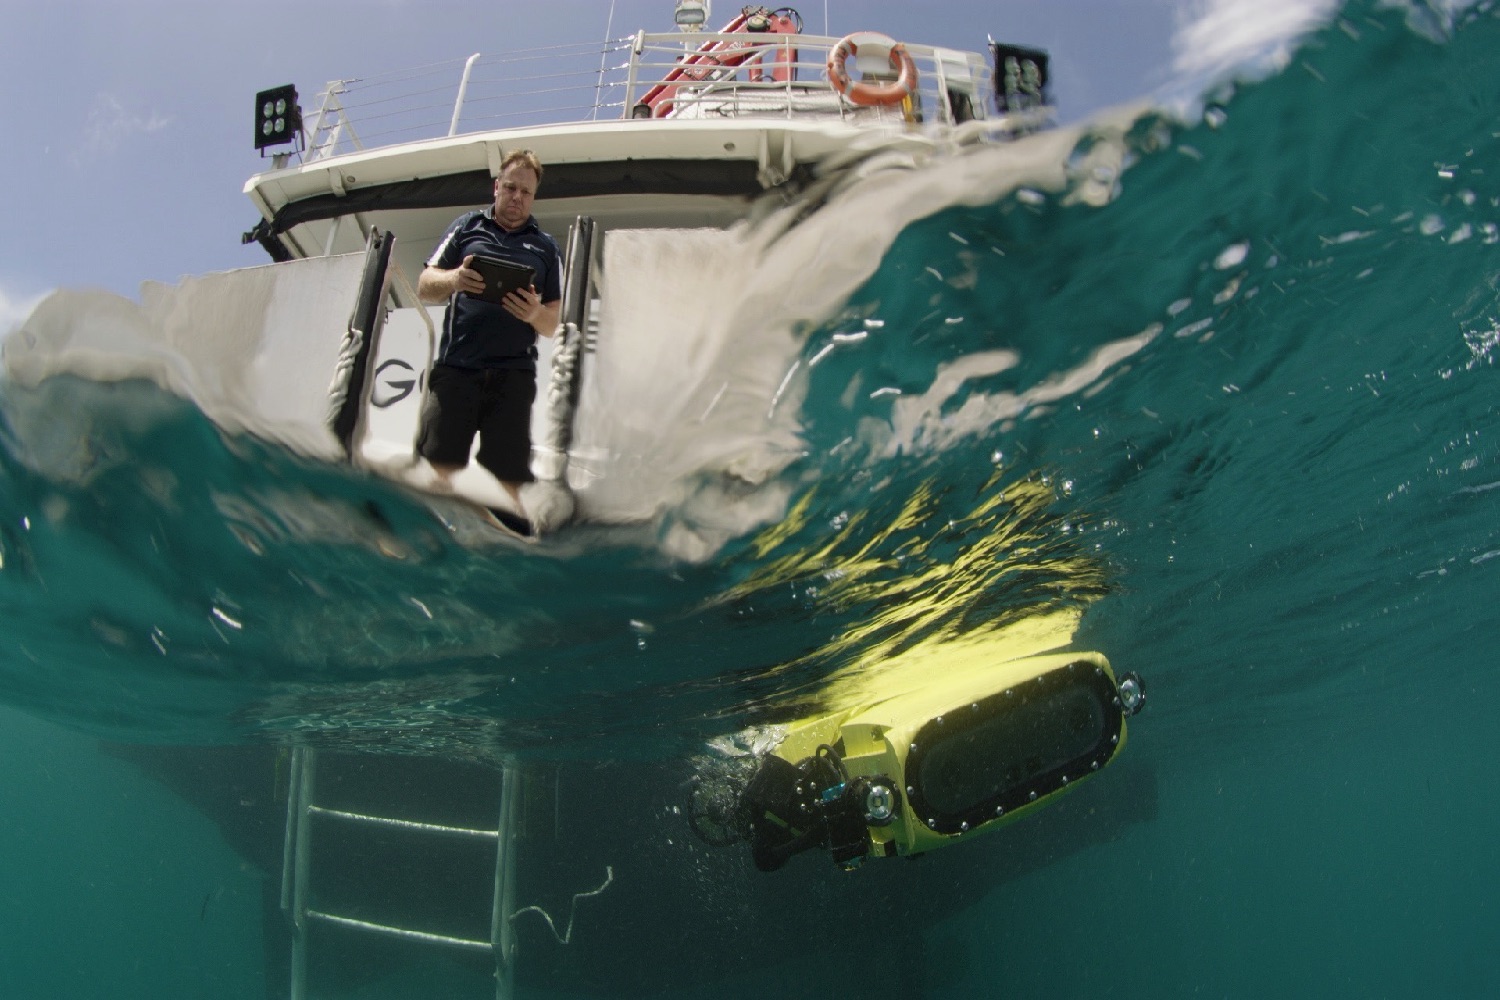 coral reef drone rangerbot matthew dunbabin test model 1